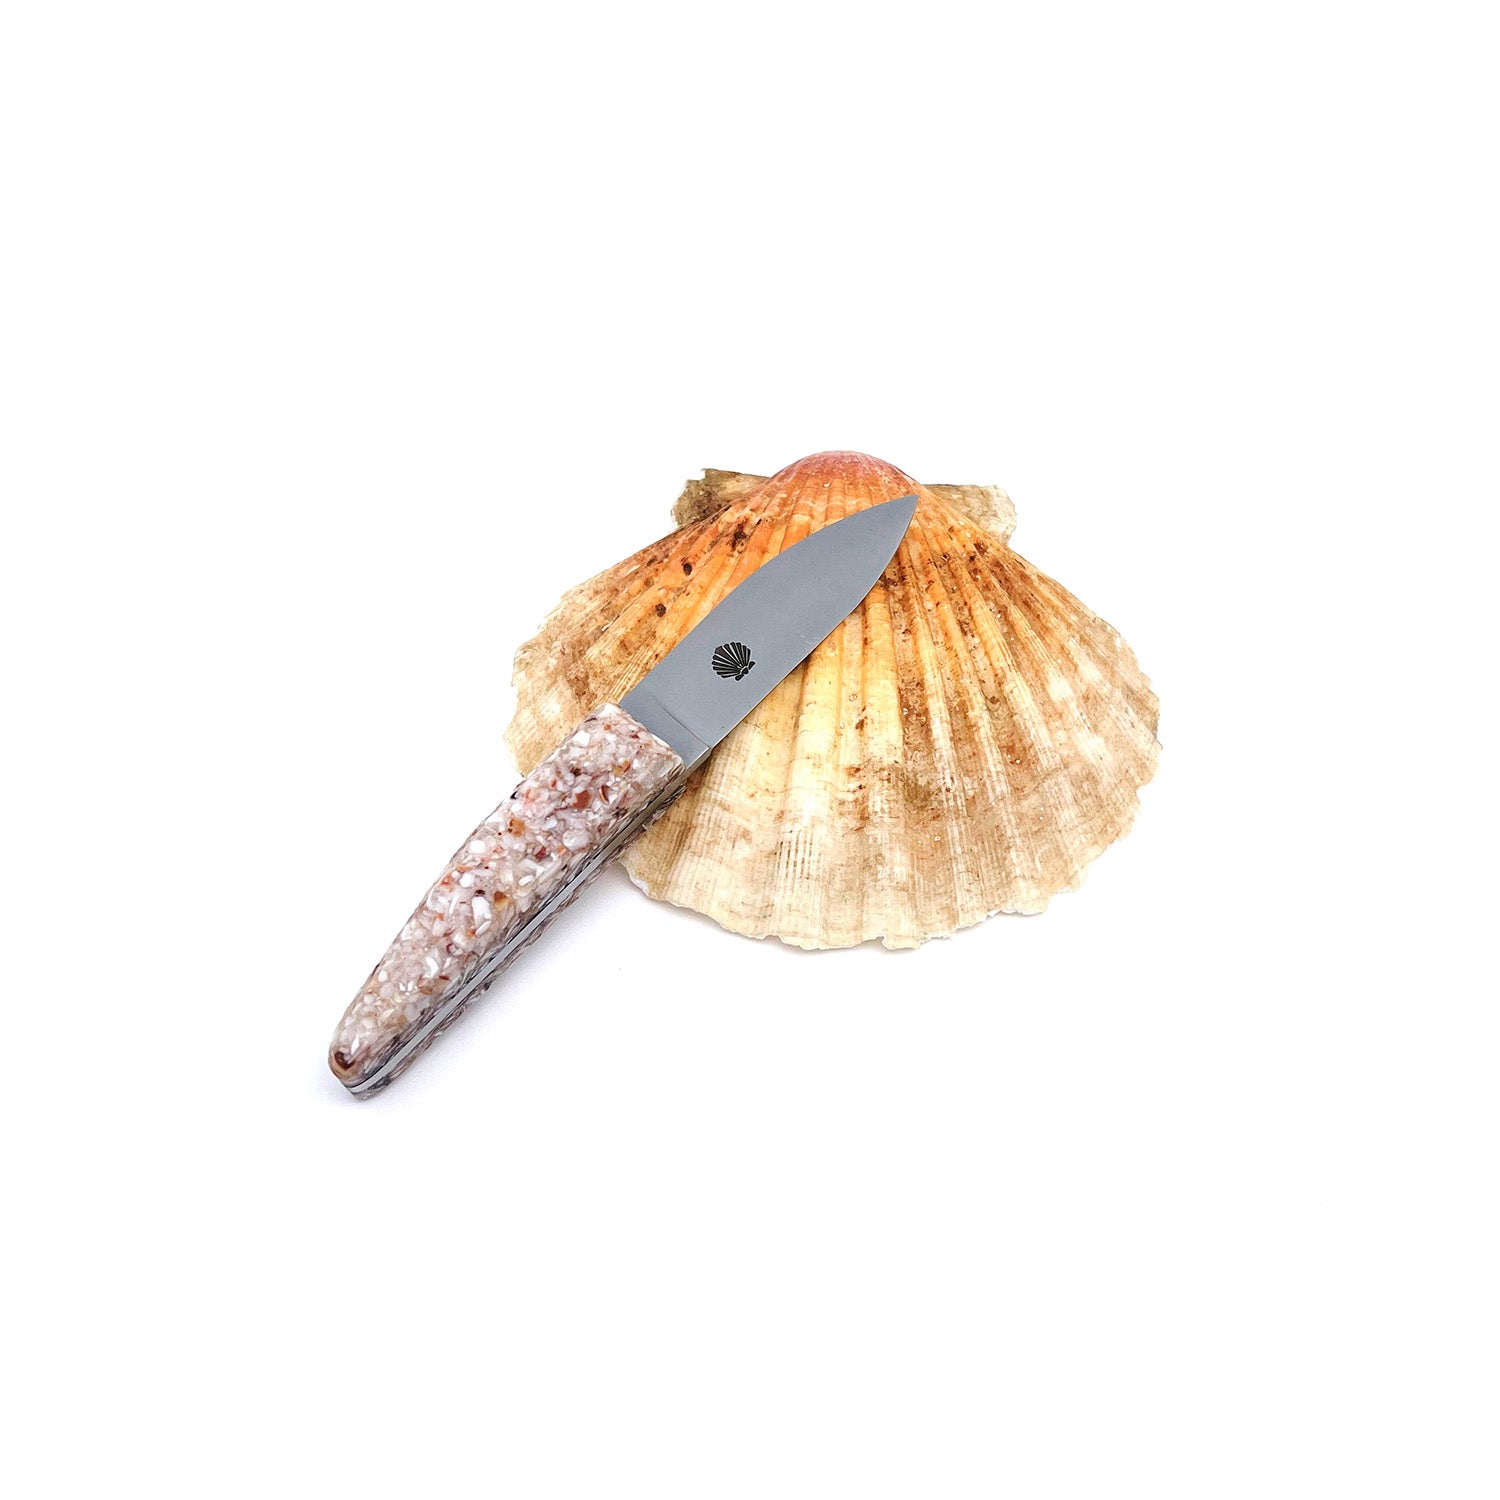 Kleines Austernmesser mit einem Griff aus recycelten Jakobsmuschelschalen